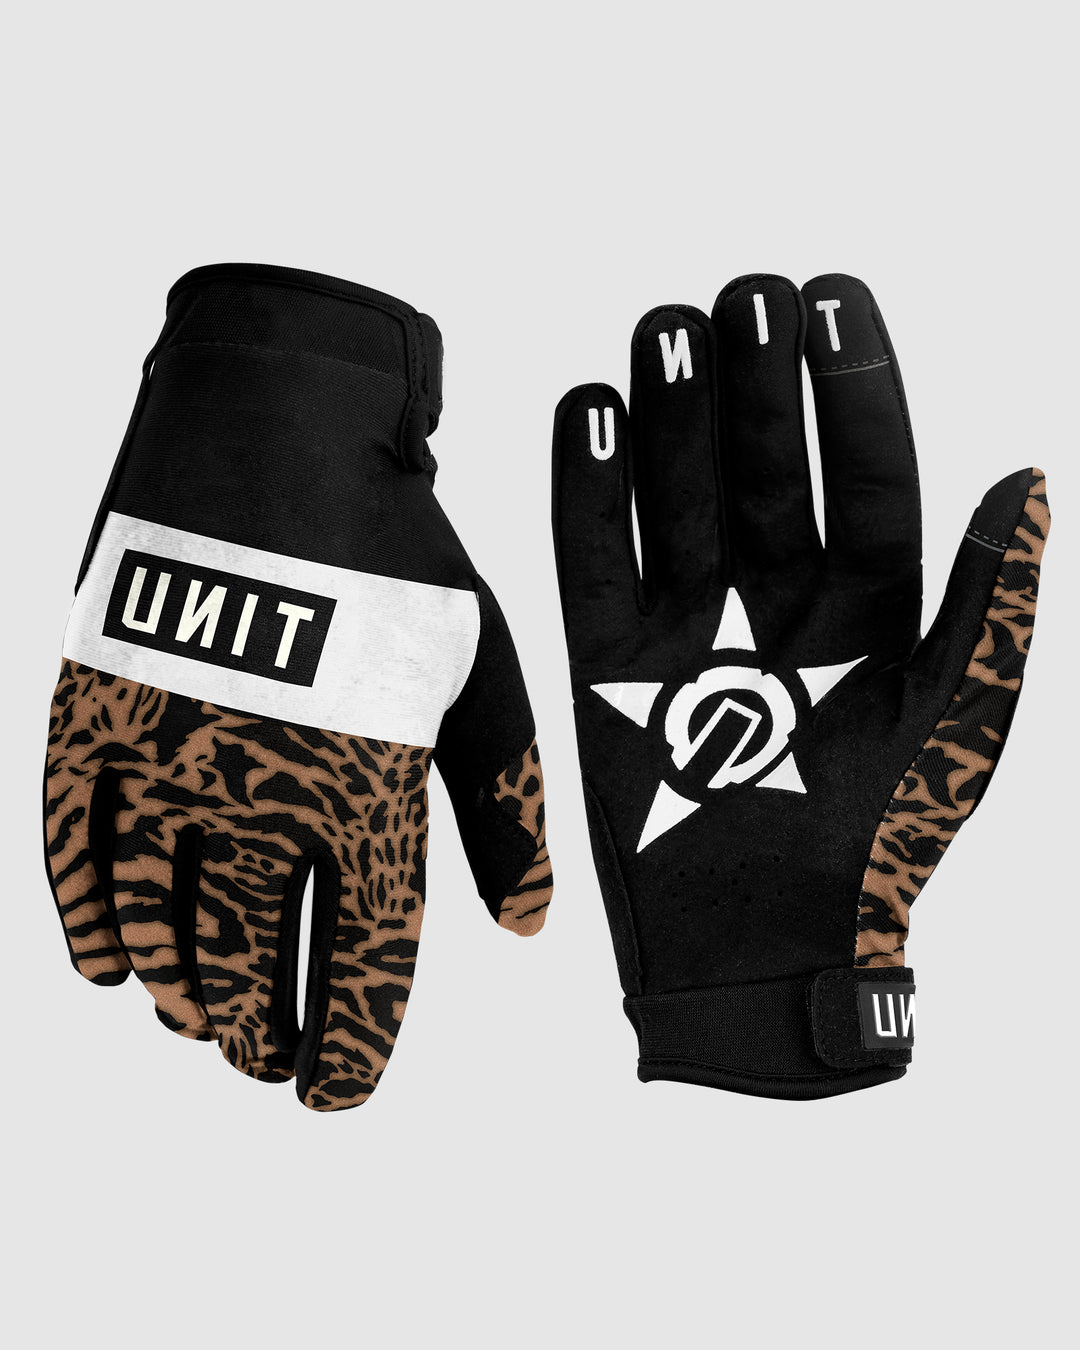 UNIT Trap Gloves